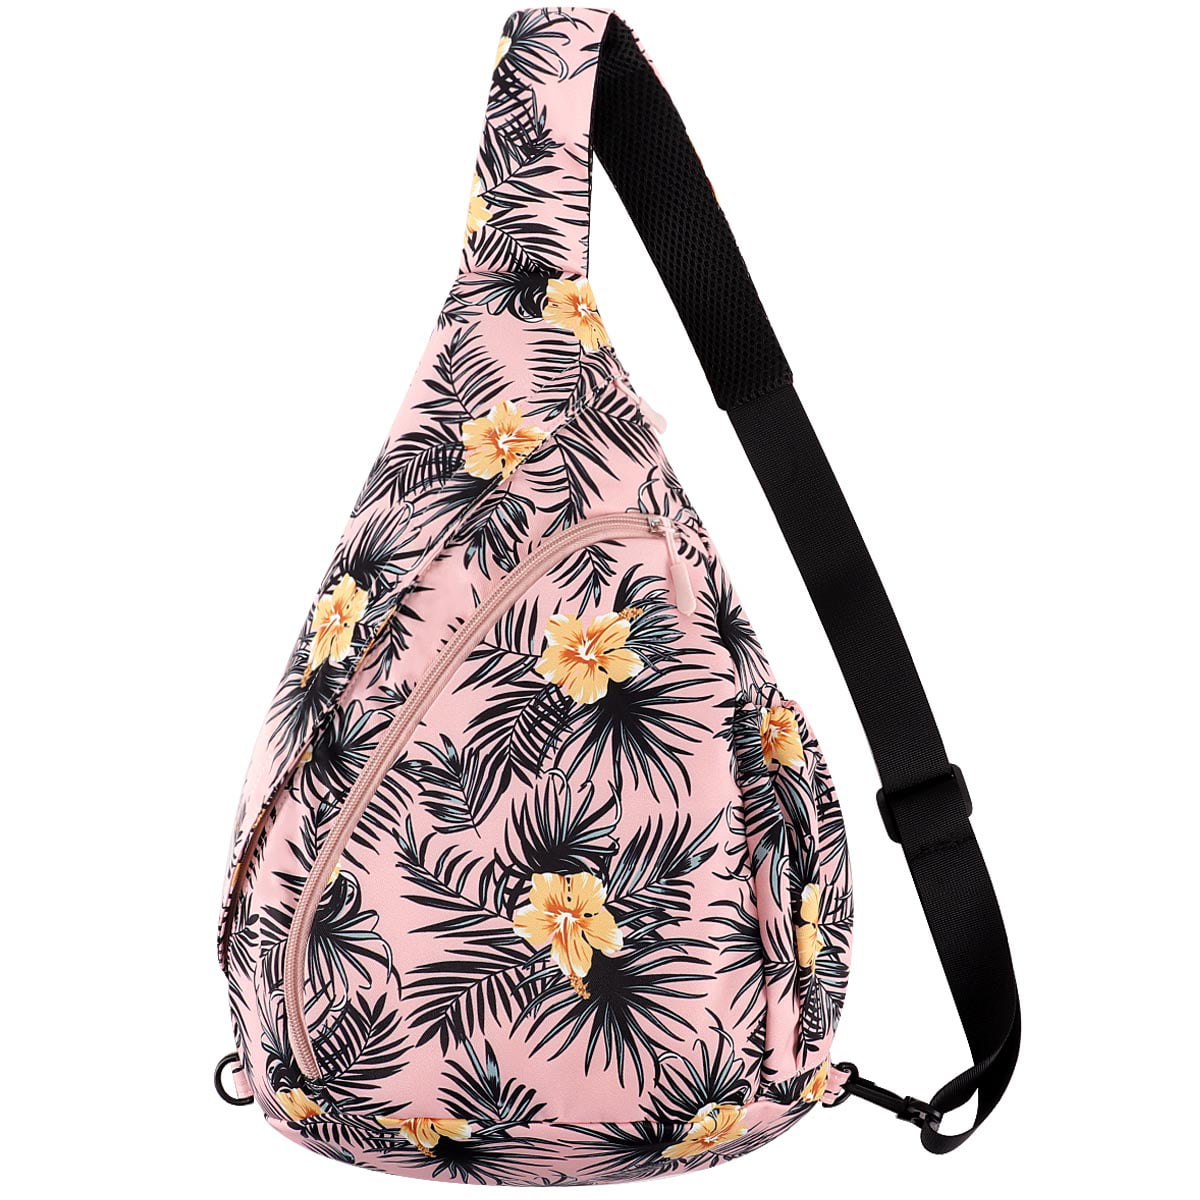 Unisex Sling Bag Crossbody Sling Backpack Mutilpurpose Shoulder Daypack with Adjustable Strap for Women Men Boys Girls